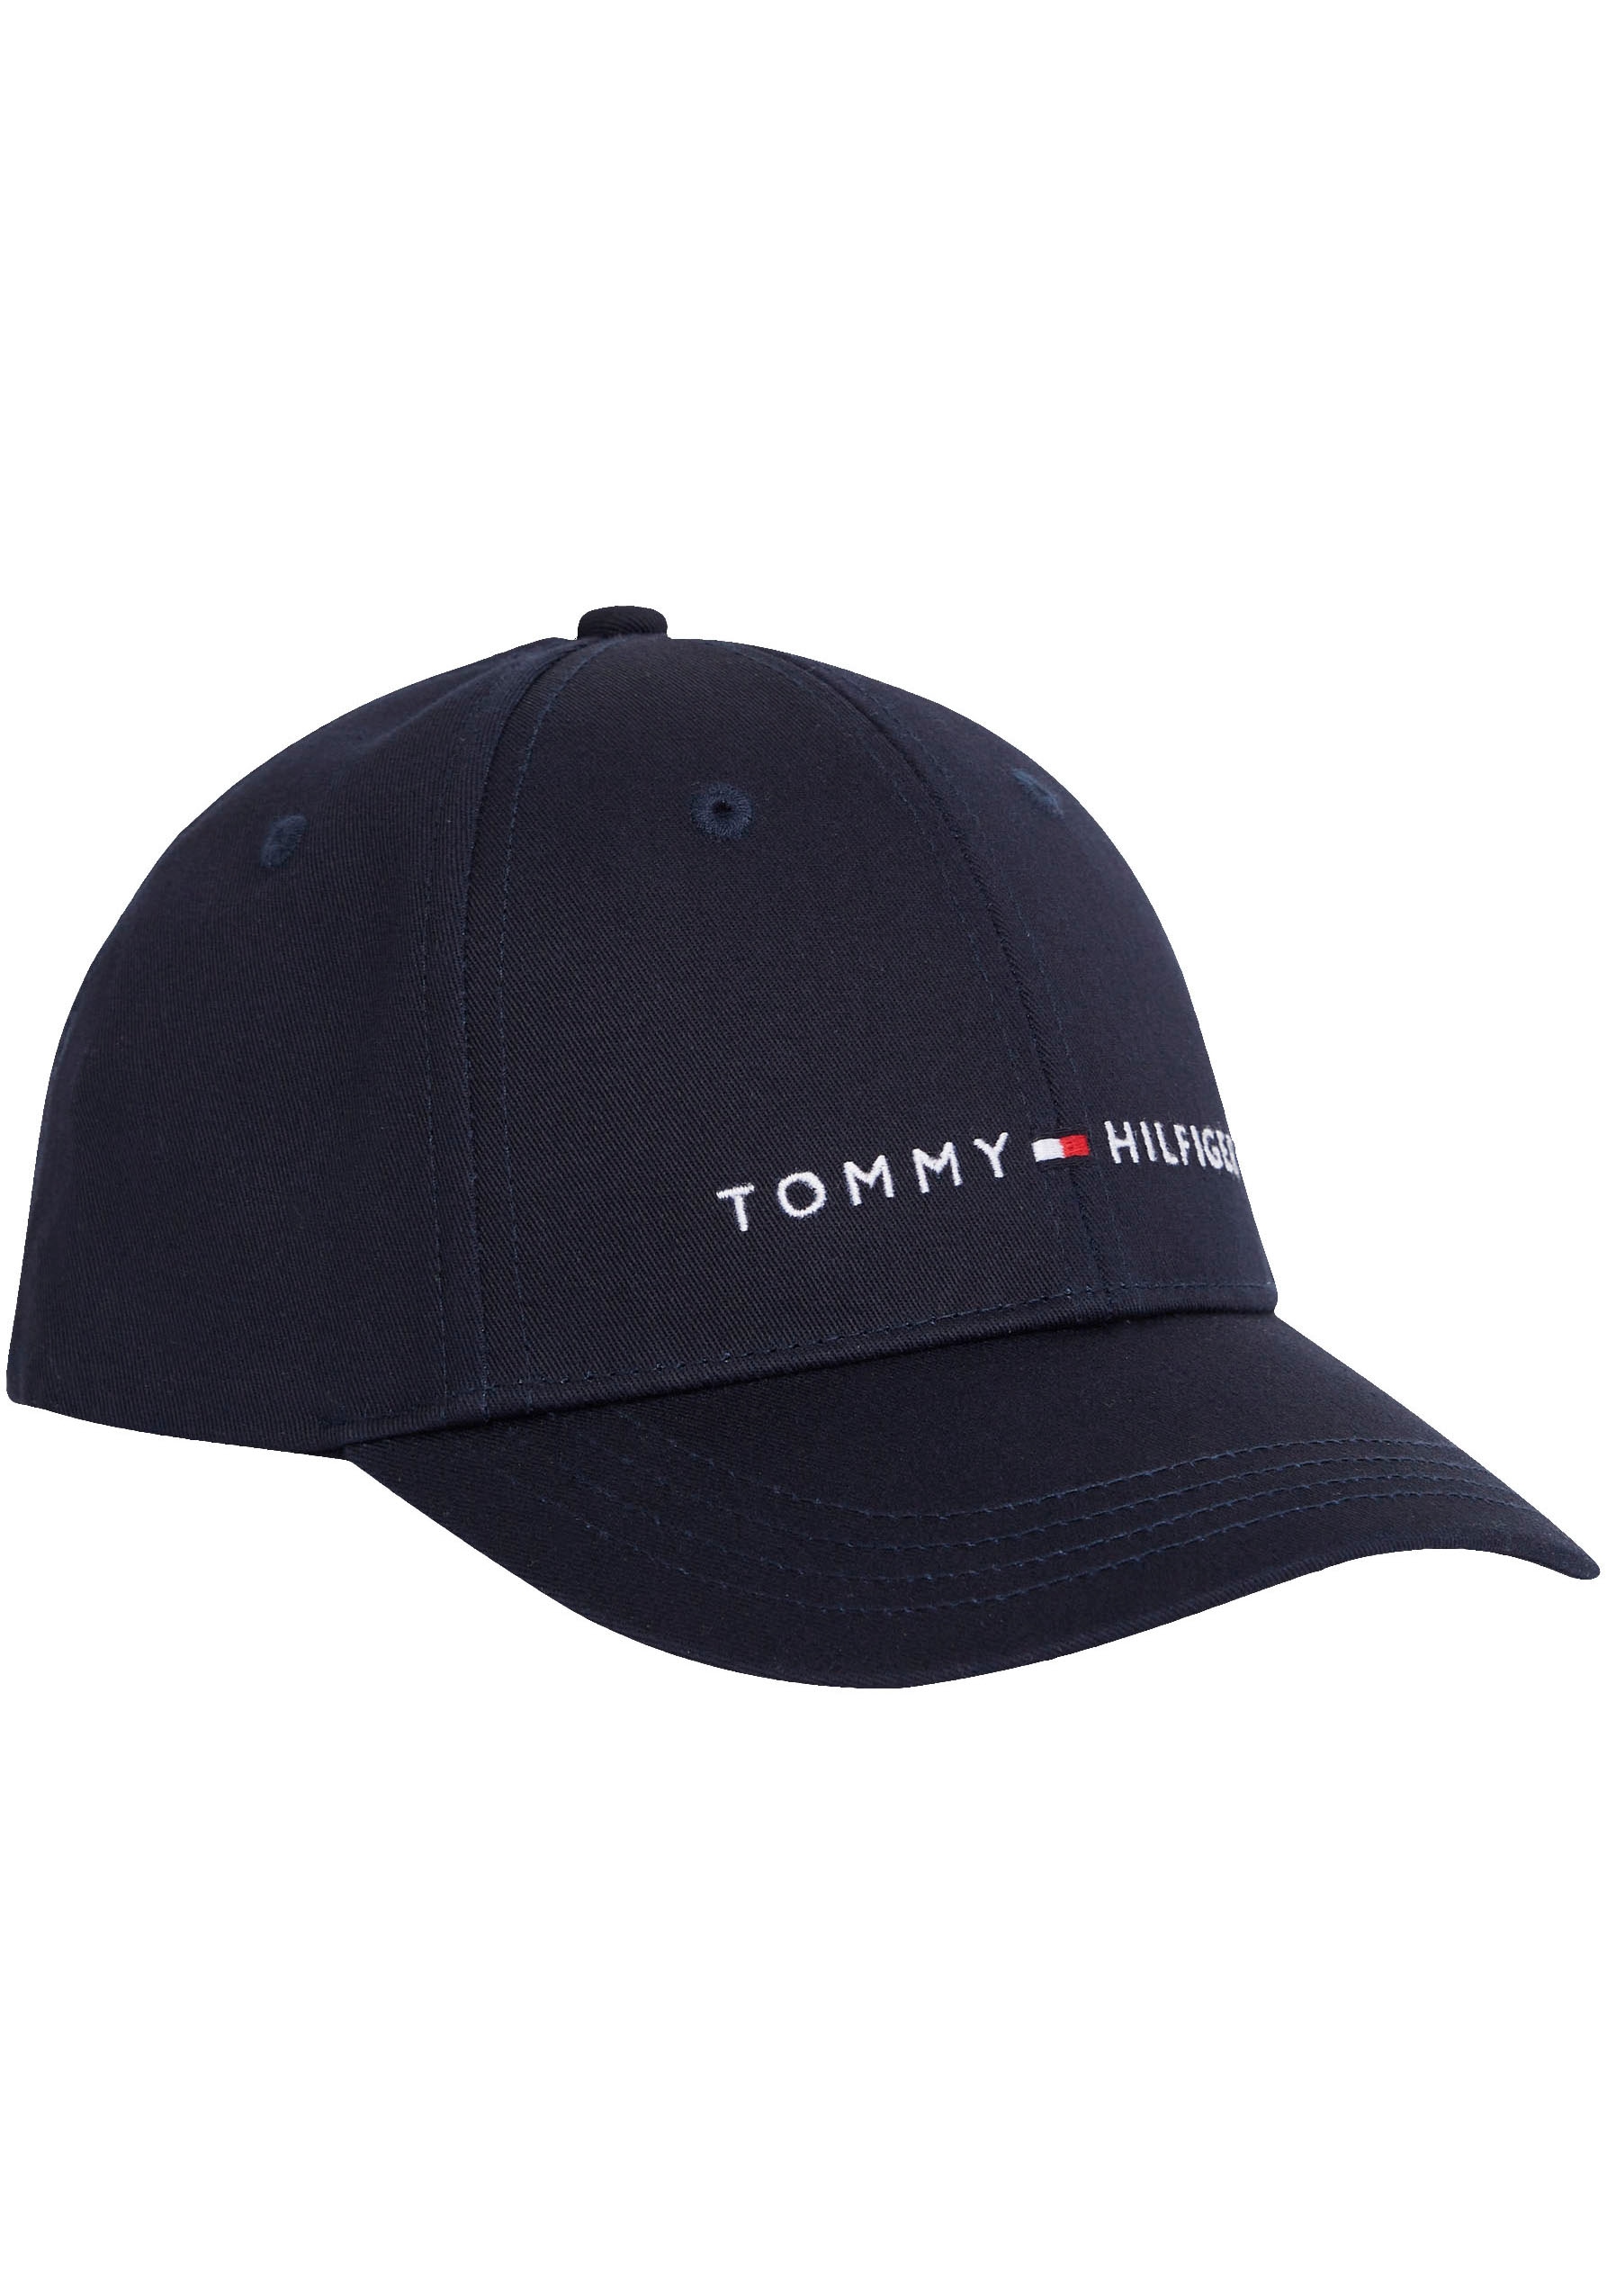 Tommy Hilfiger Snapback Cap, Kinder Essential verstellbare Cap mit Branding  bestellen | I\'m walking